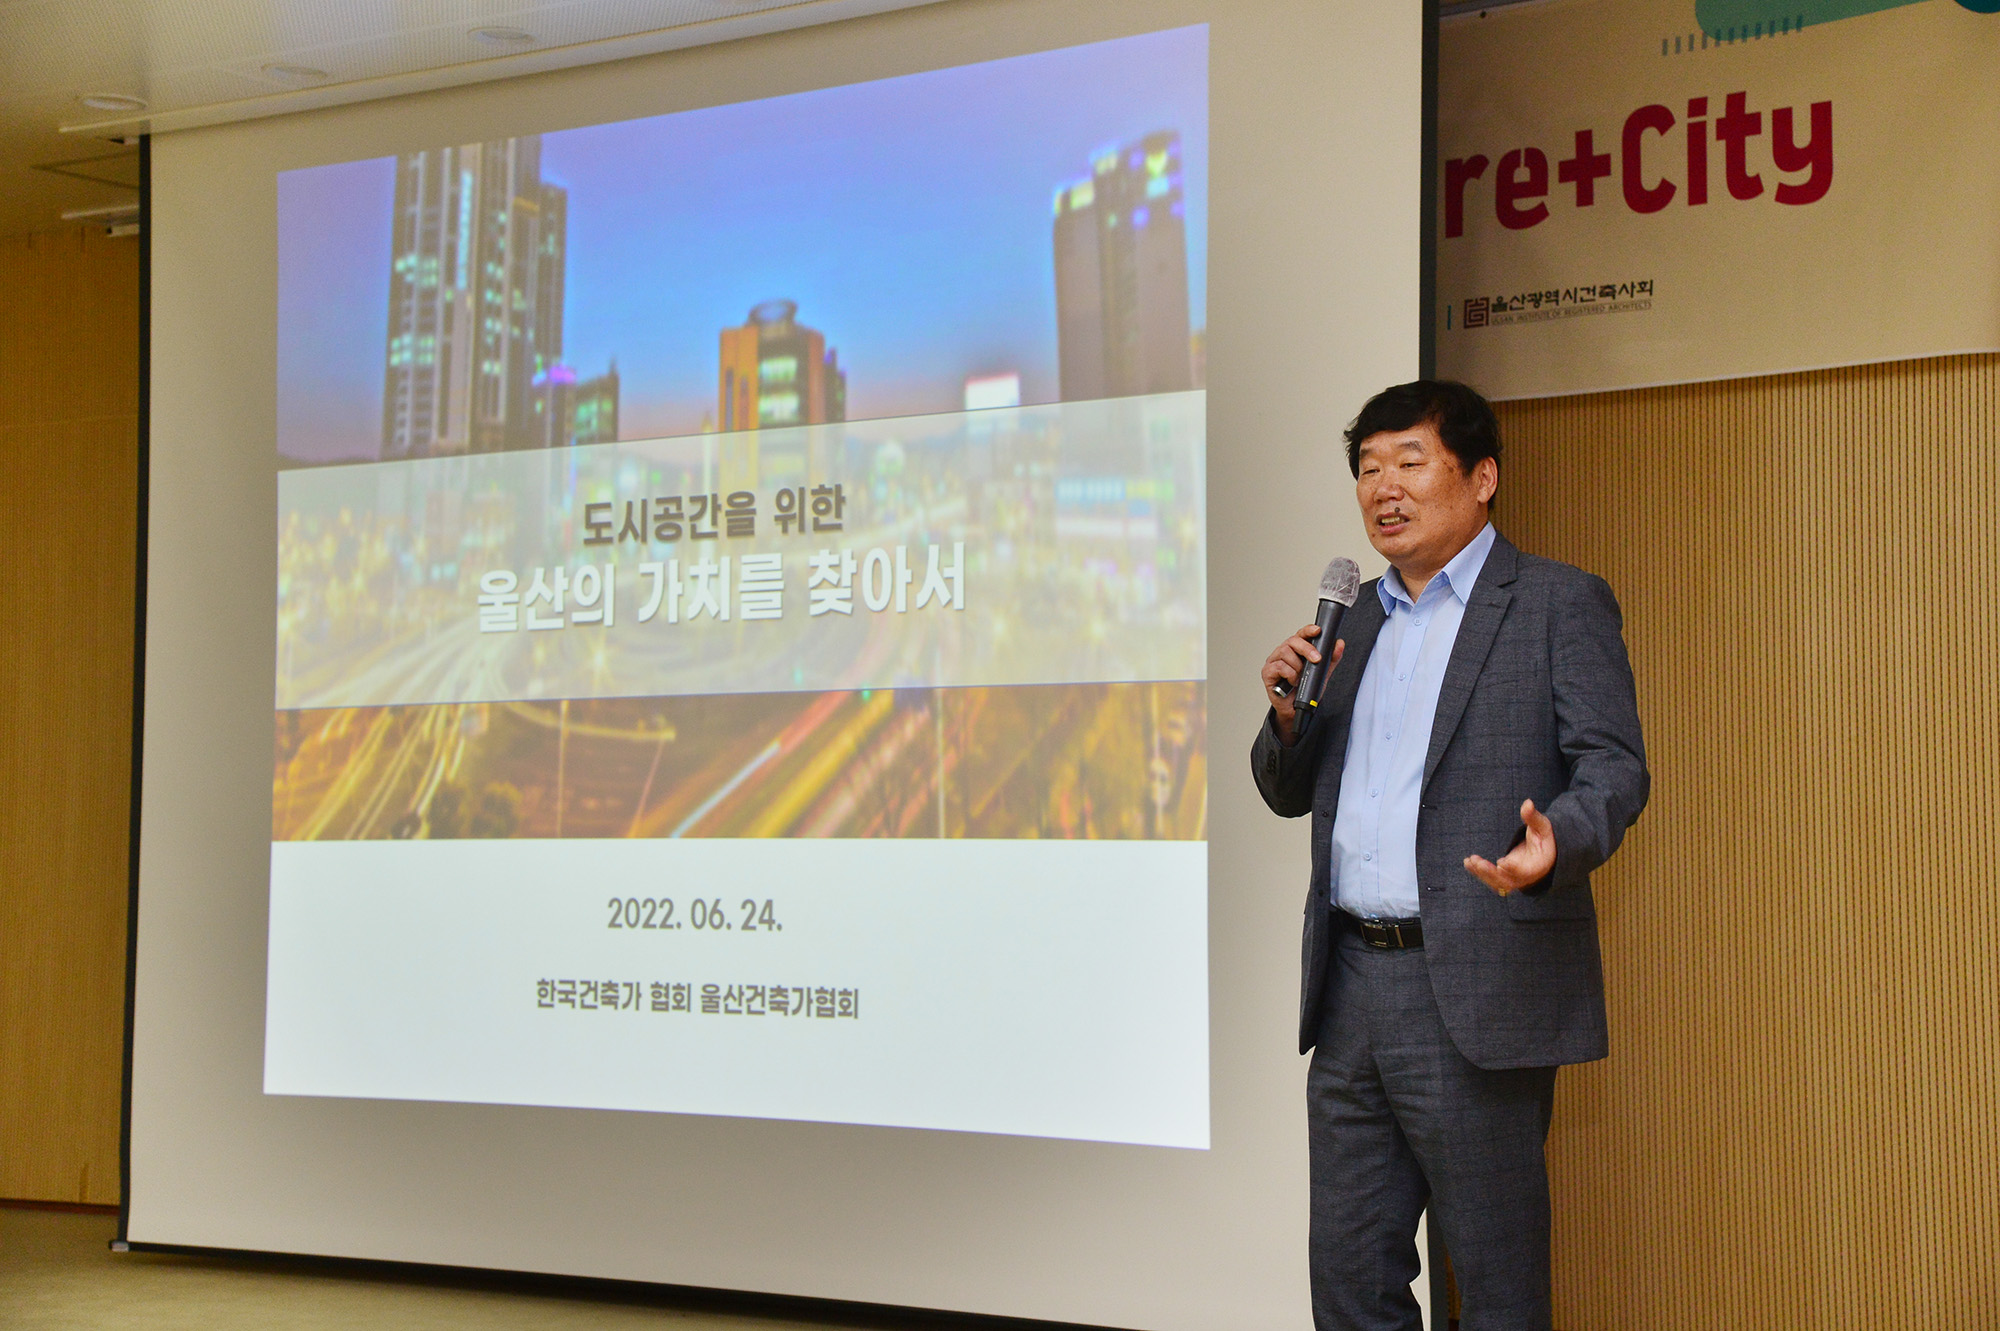 박병석 의장, ‘21세기 울산의 가치’ 세미나 개최3